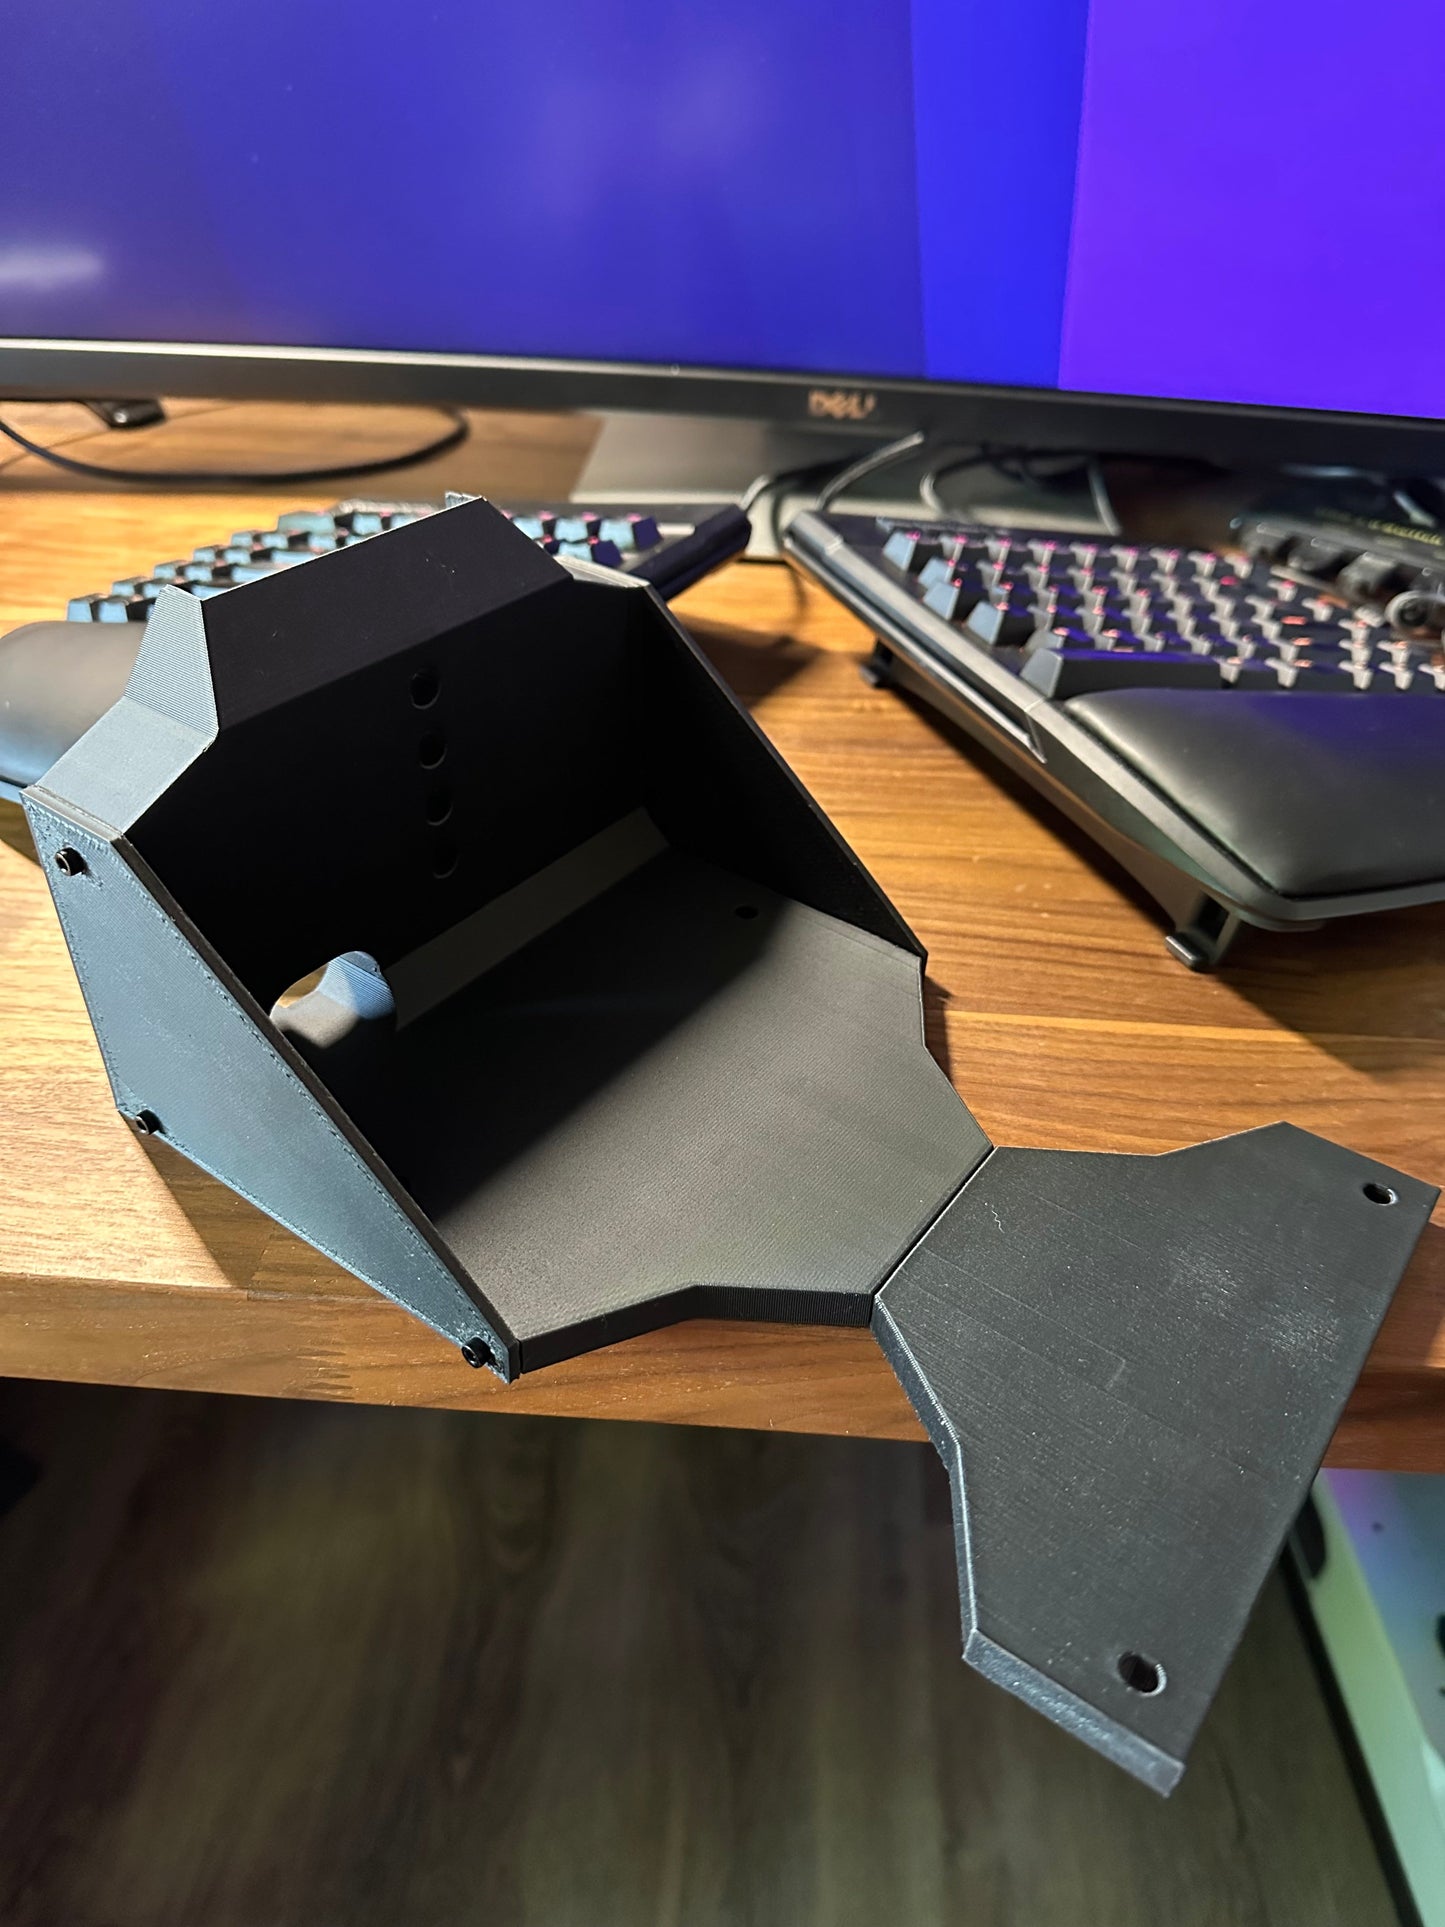 VKB Gladiator Desk Mount - 3D Printed WITHOUT HARDWARE